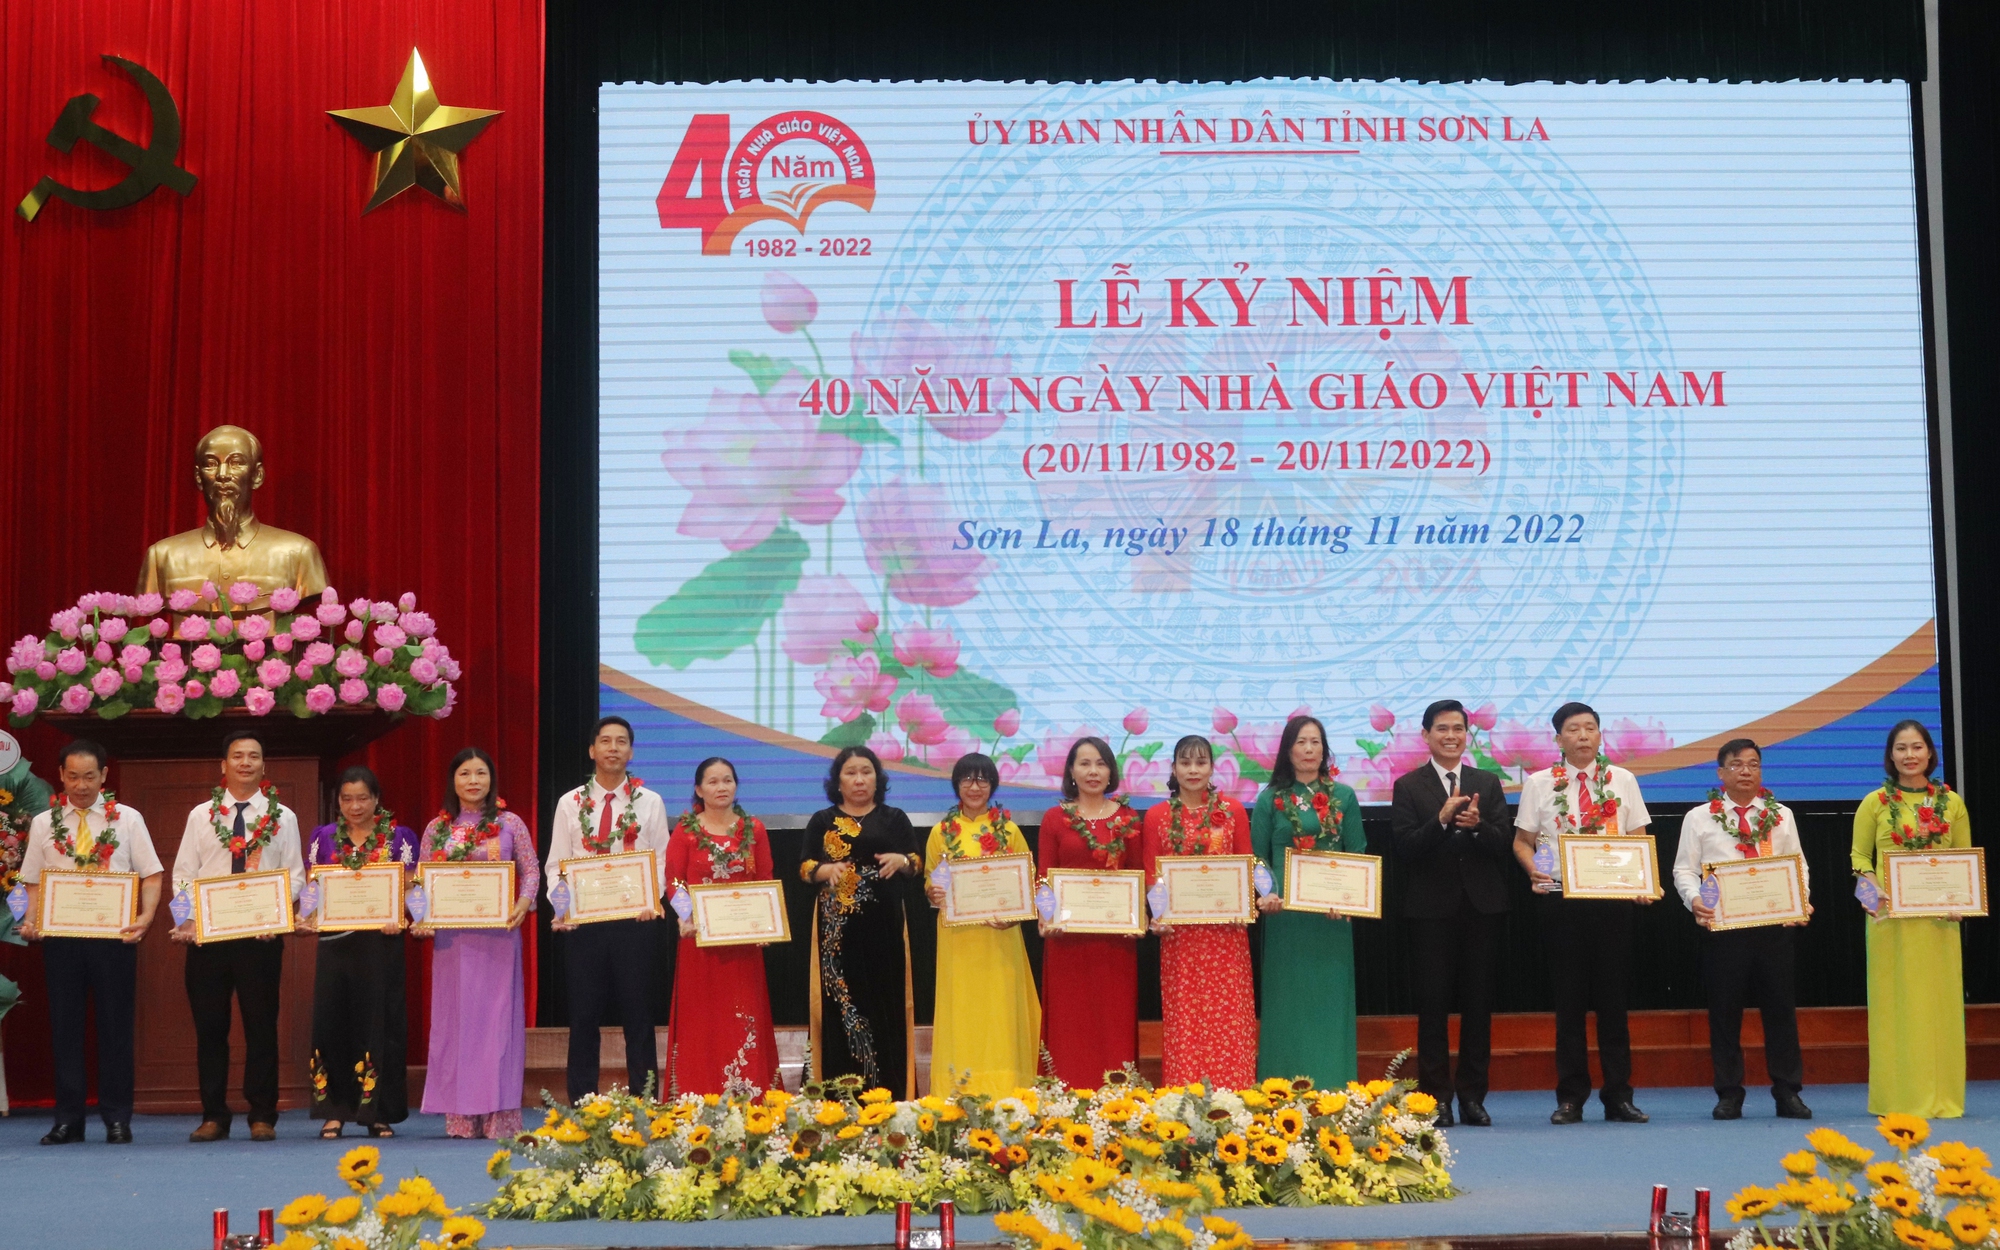 Sơn La: Vinh danh các nhà giáo ưu tú nhân ngày Nhà giáo Việt Nam